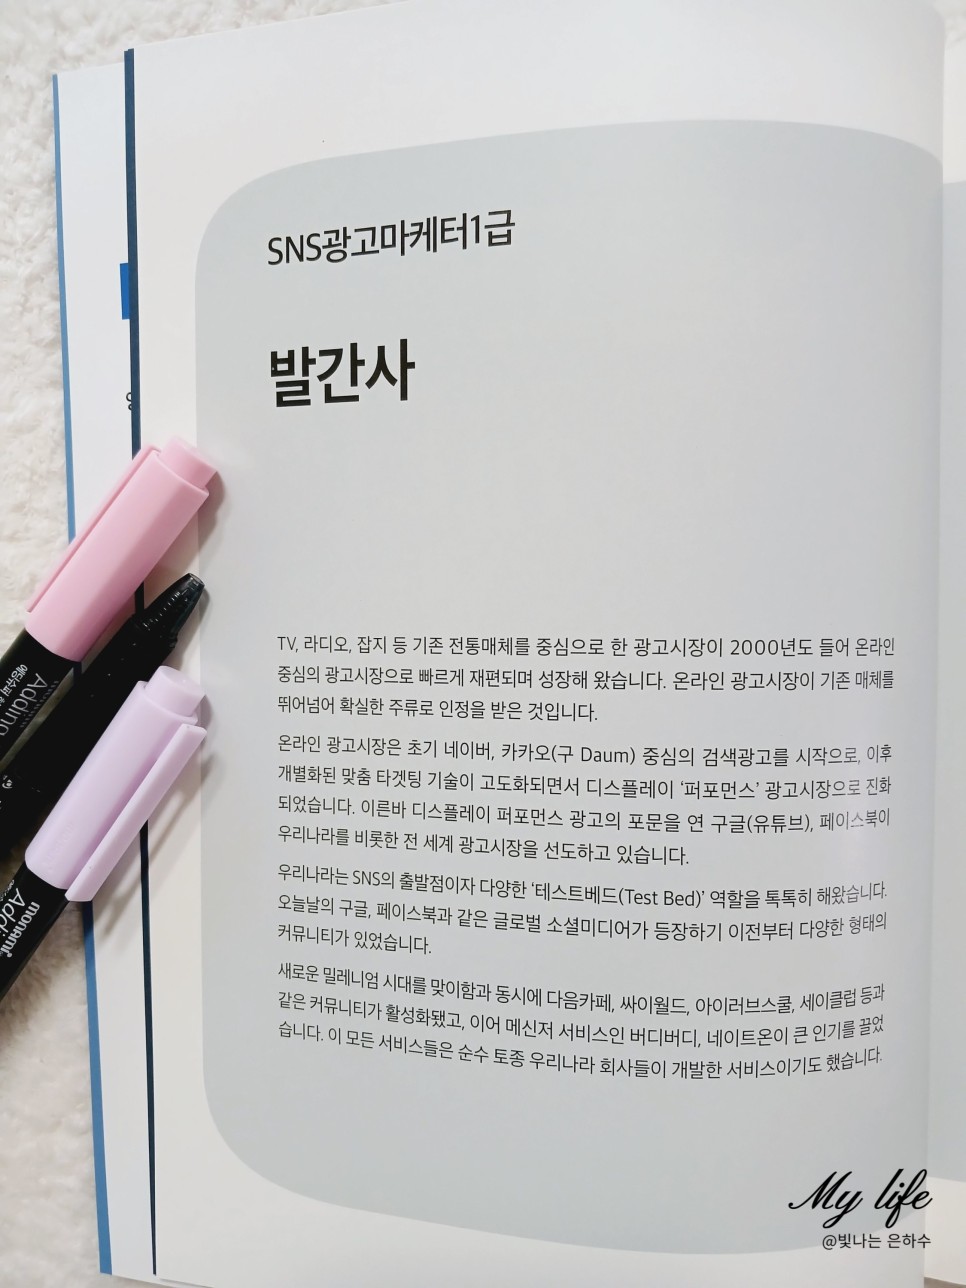 SNS광고마케터 1급 신간 책추천 자격증 시험 소개